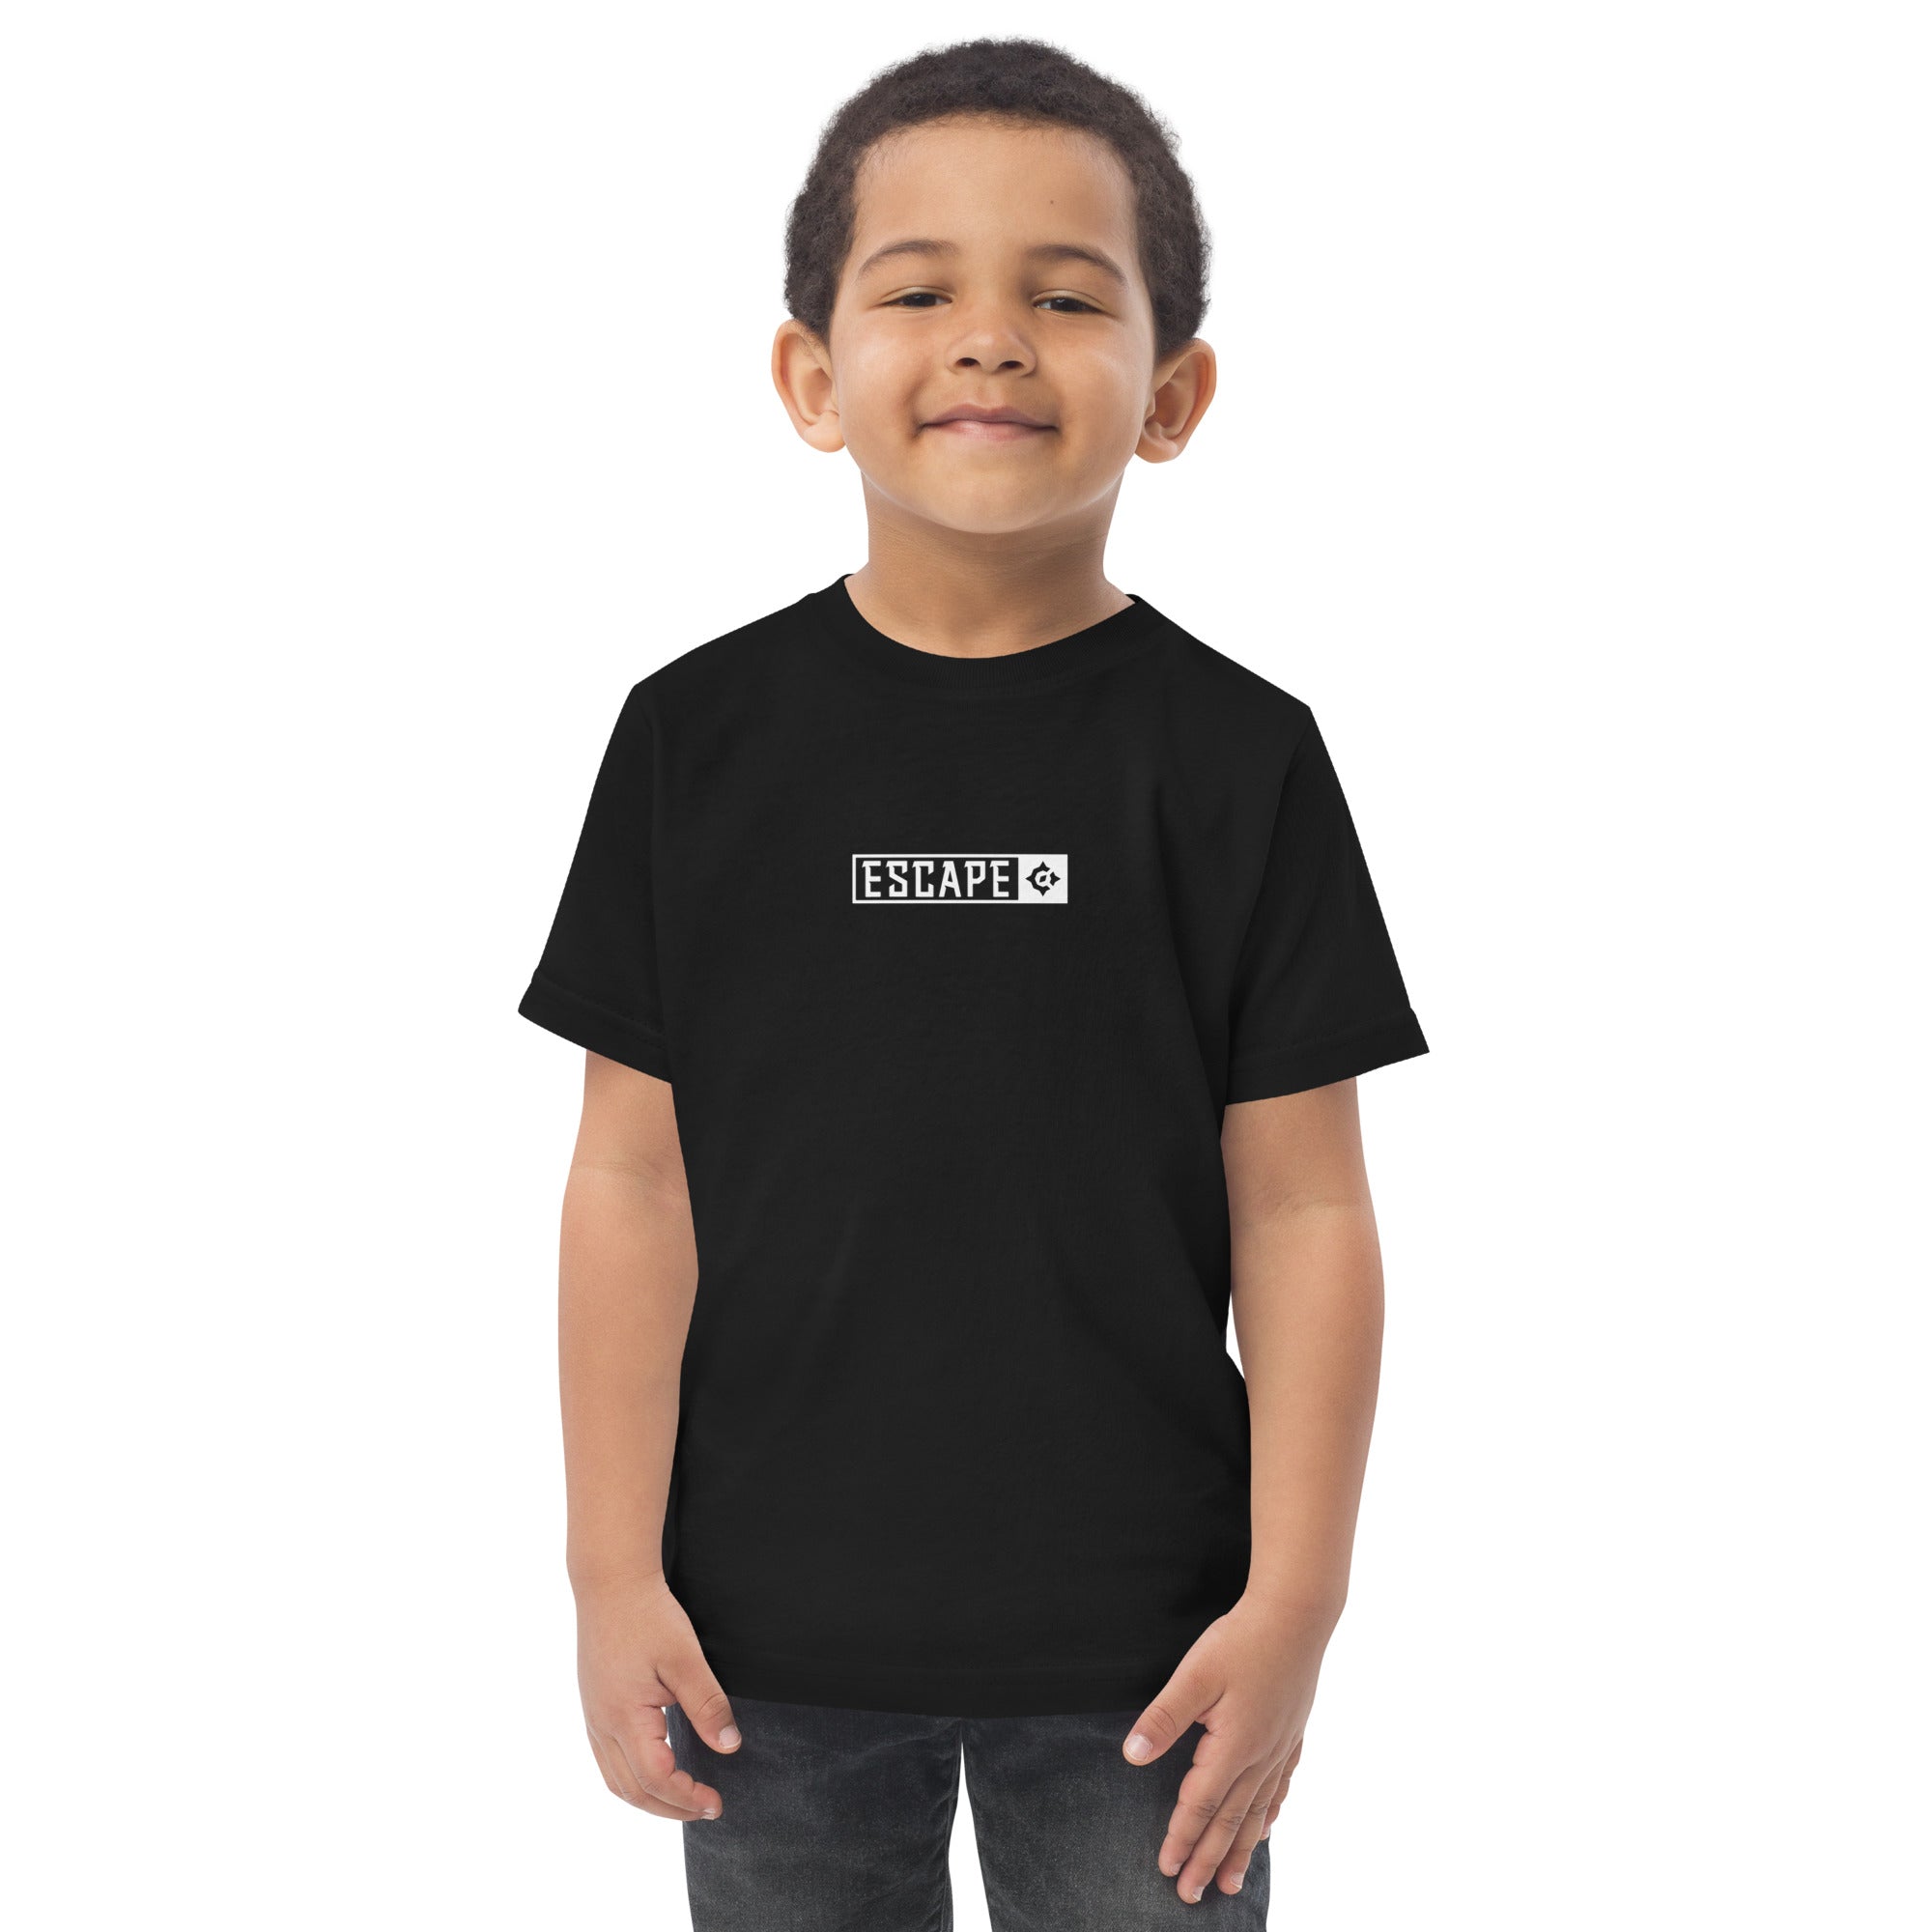 Escape Toddler t-shirt